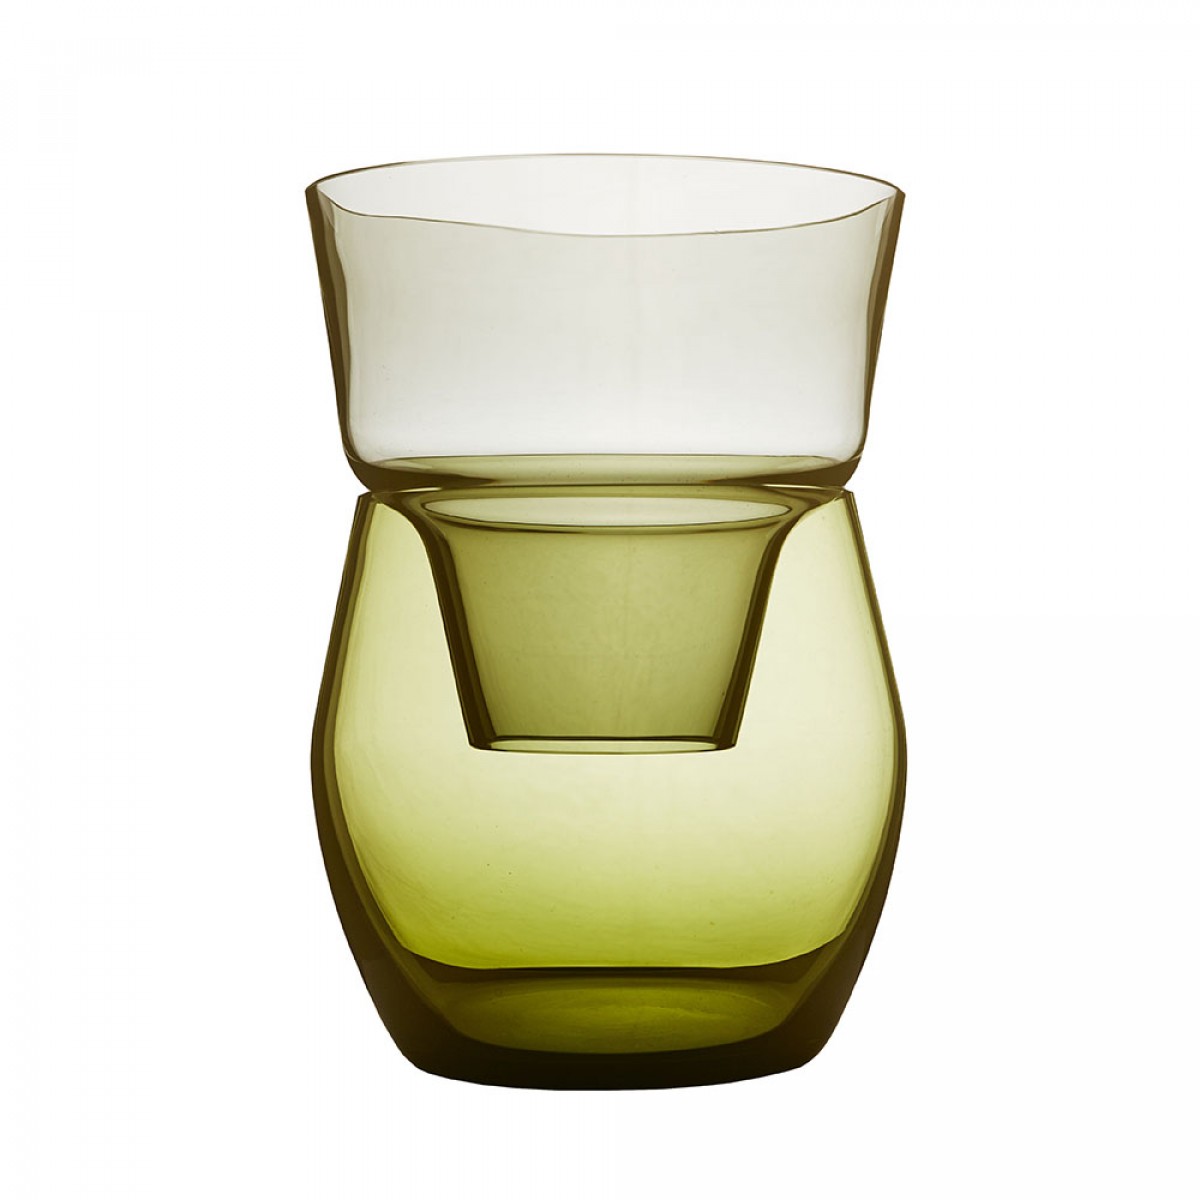 Annika Sparkes Produktdesign Roadie one vase | two pieces | three archetypes (stahlgrau/antikgelb)